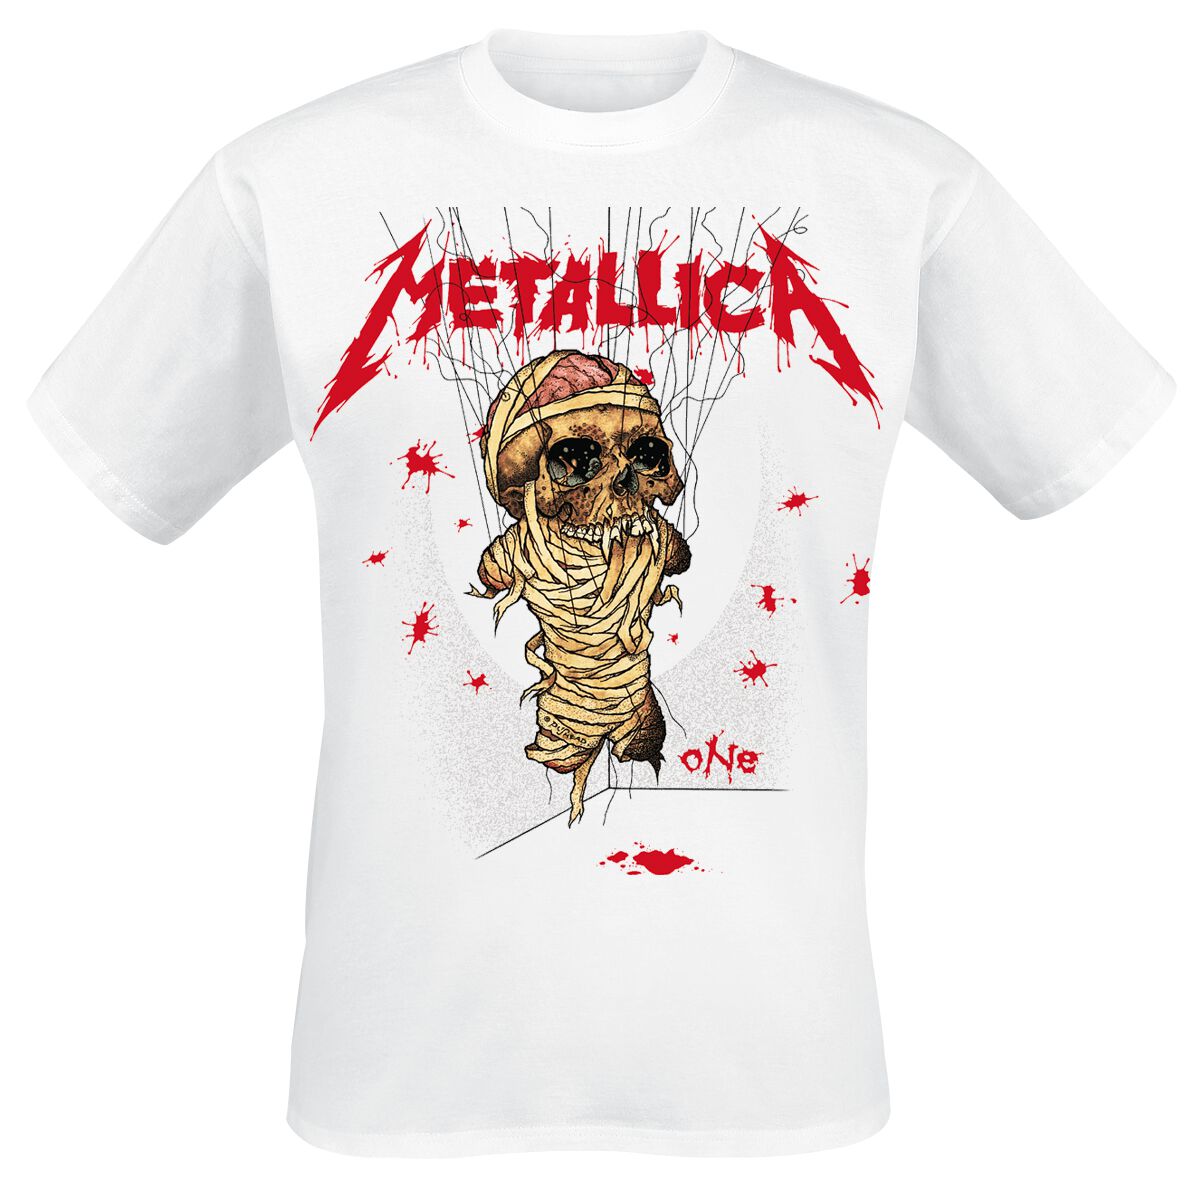 Metallica T-Shirt - One Landmine - S bis 3XL - für Männer - Größe 3XL - weiß  - Lizenziertes Merchandise!